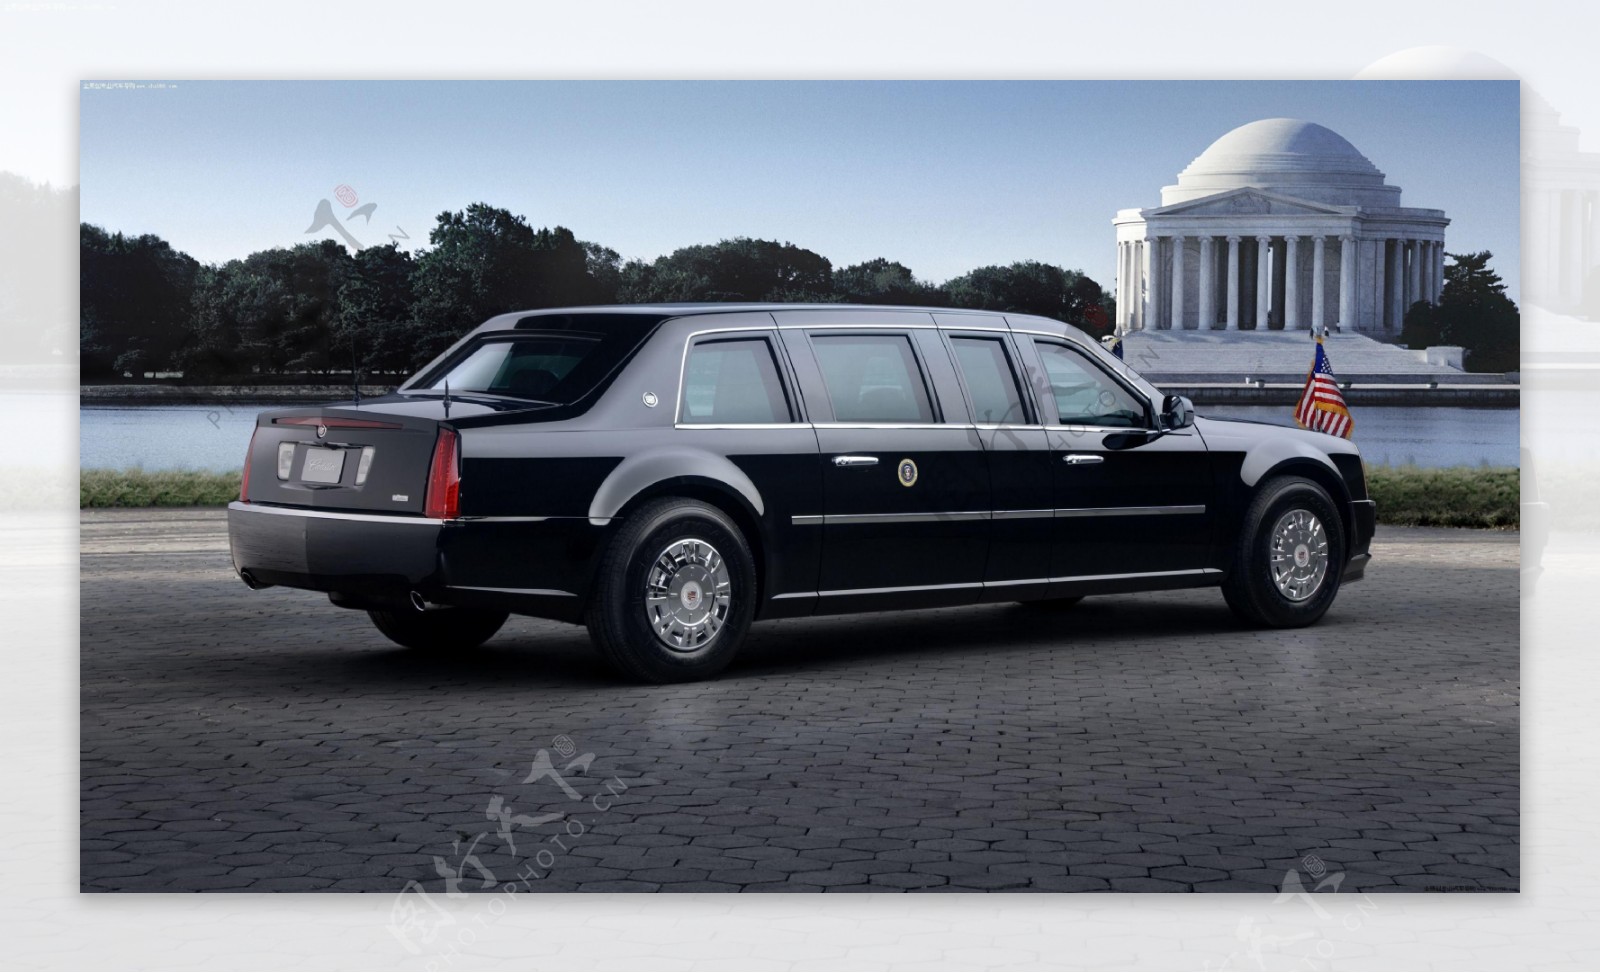 凯迪拉克美国总统专属座驾图片